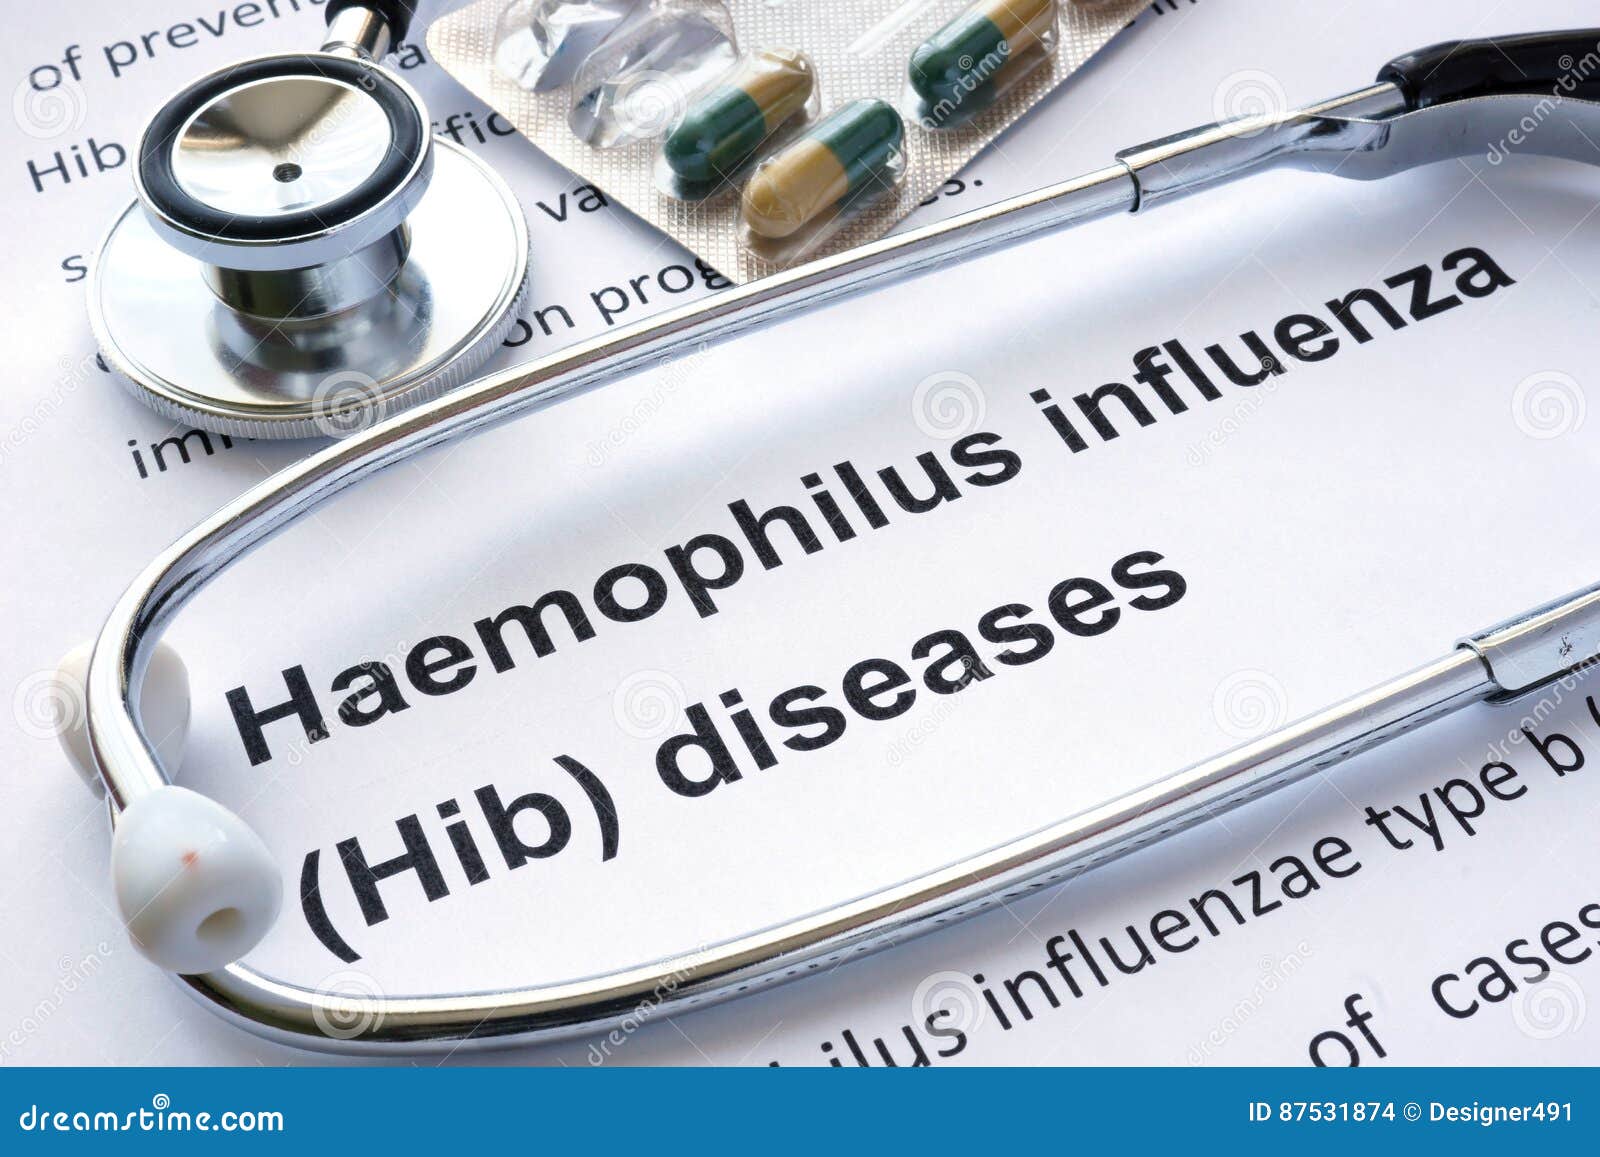 paper with diagnosis haemophilus influenza hib.